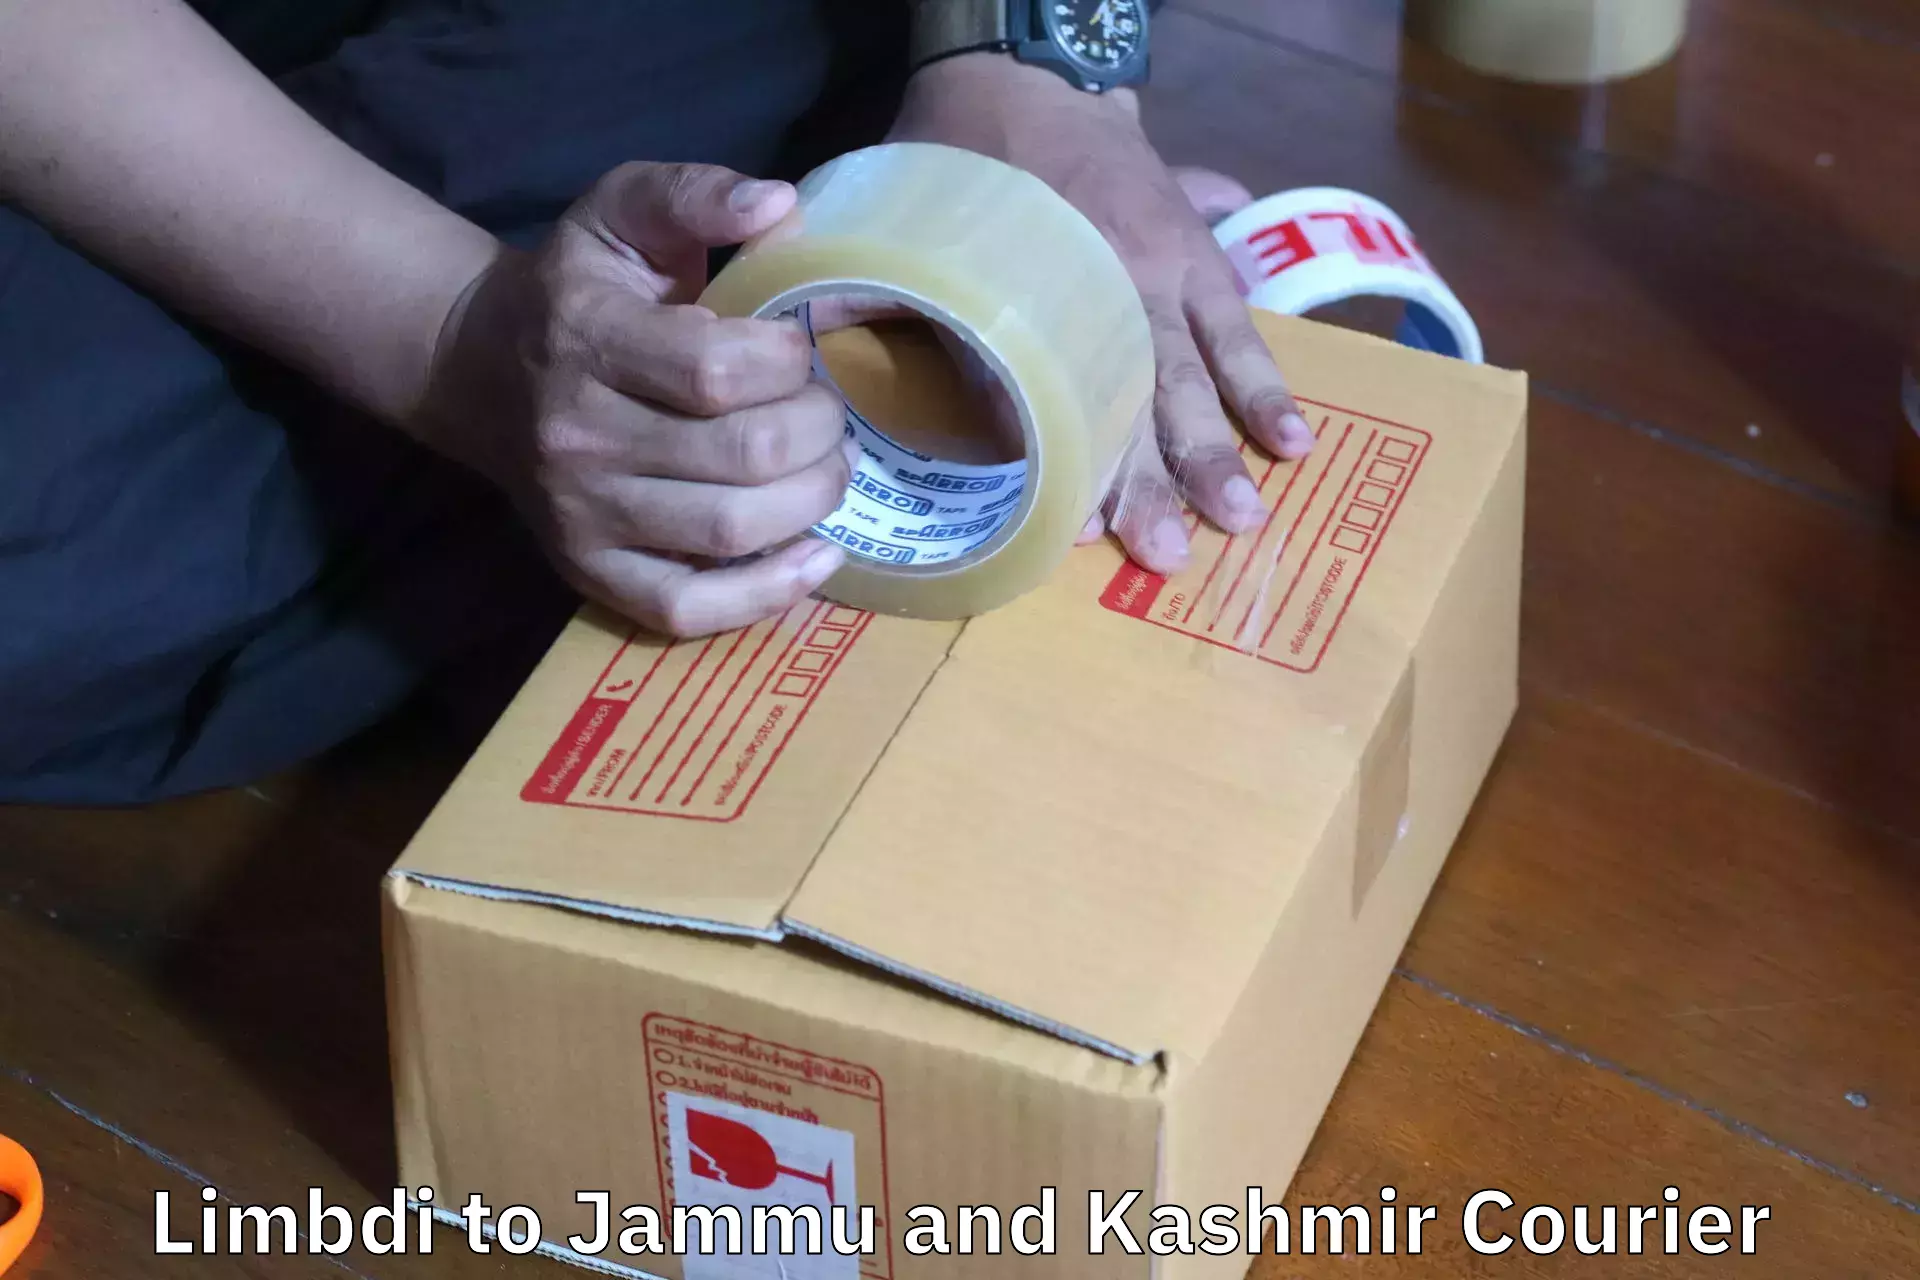 Furniture transport experts Limbdi to Jammu and Kashmir